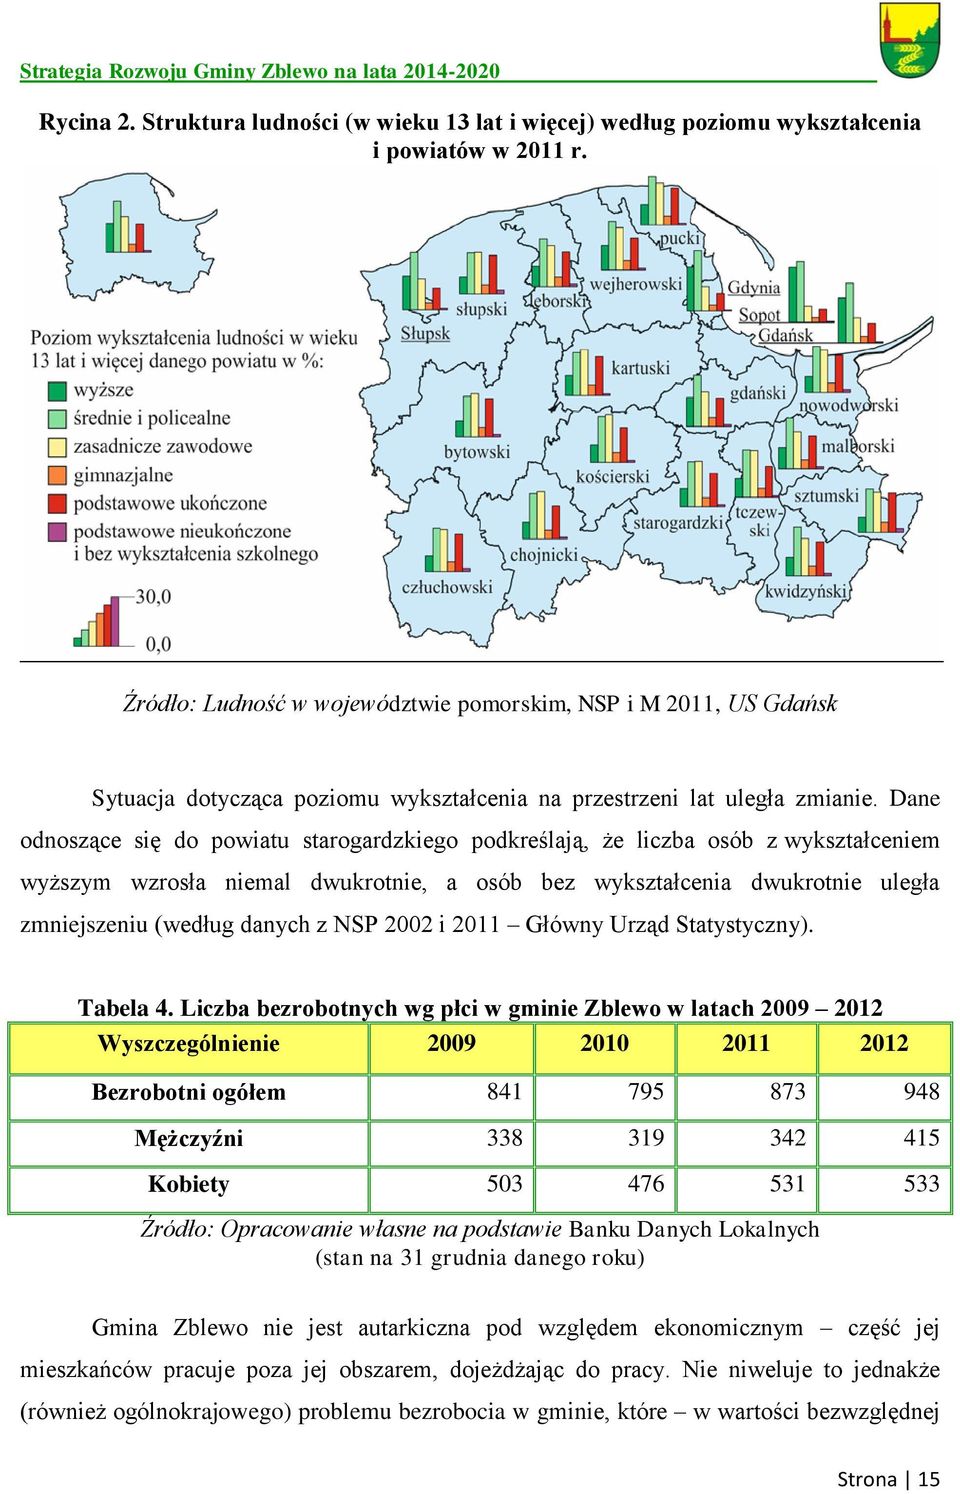 Dane odnoszące się do powiatu starogardzkiego podkreślają, że liczba osób z wykształceniem wyższym wzrosła niemal dwukrotnie, a osób bez wykształcenia dwukrotnie uległa zmniejszeniu (według danych z